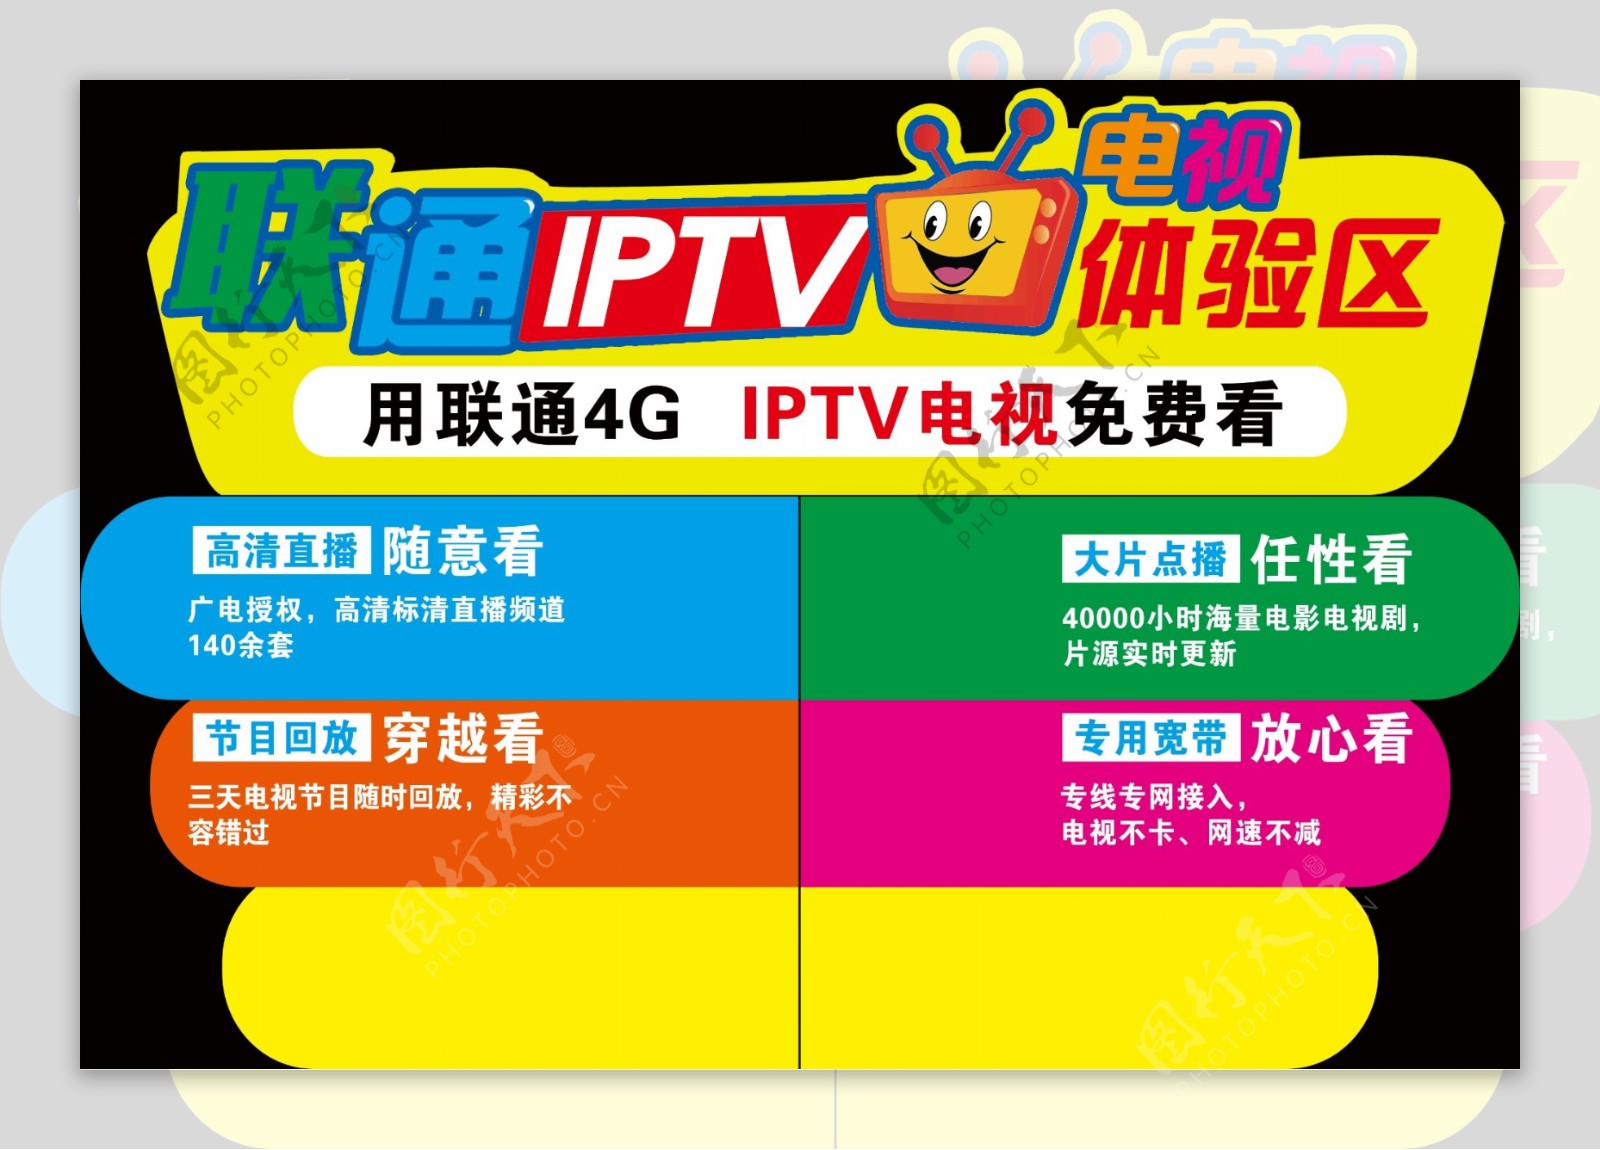 联通IPTV E951 新版2.0 怎么安装第三方软件_IPTV机顶盒_ZNDS